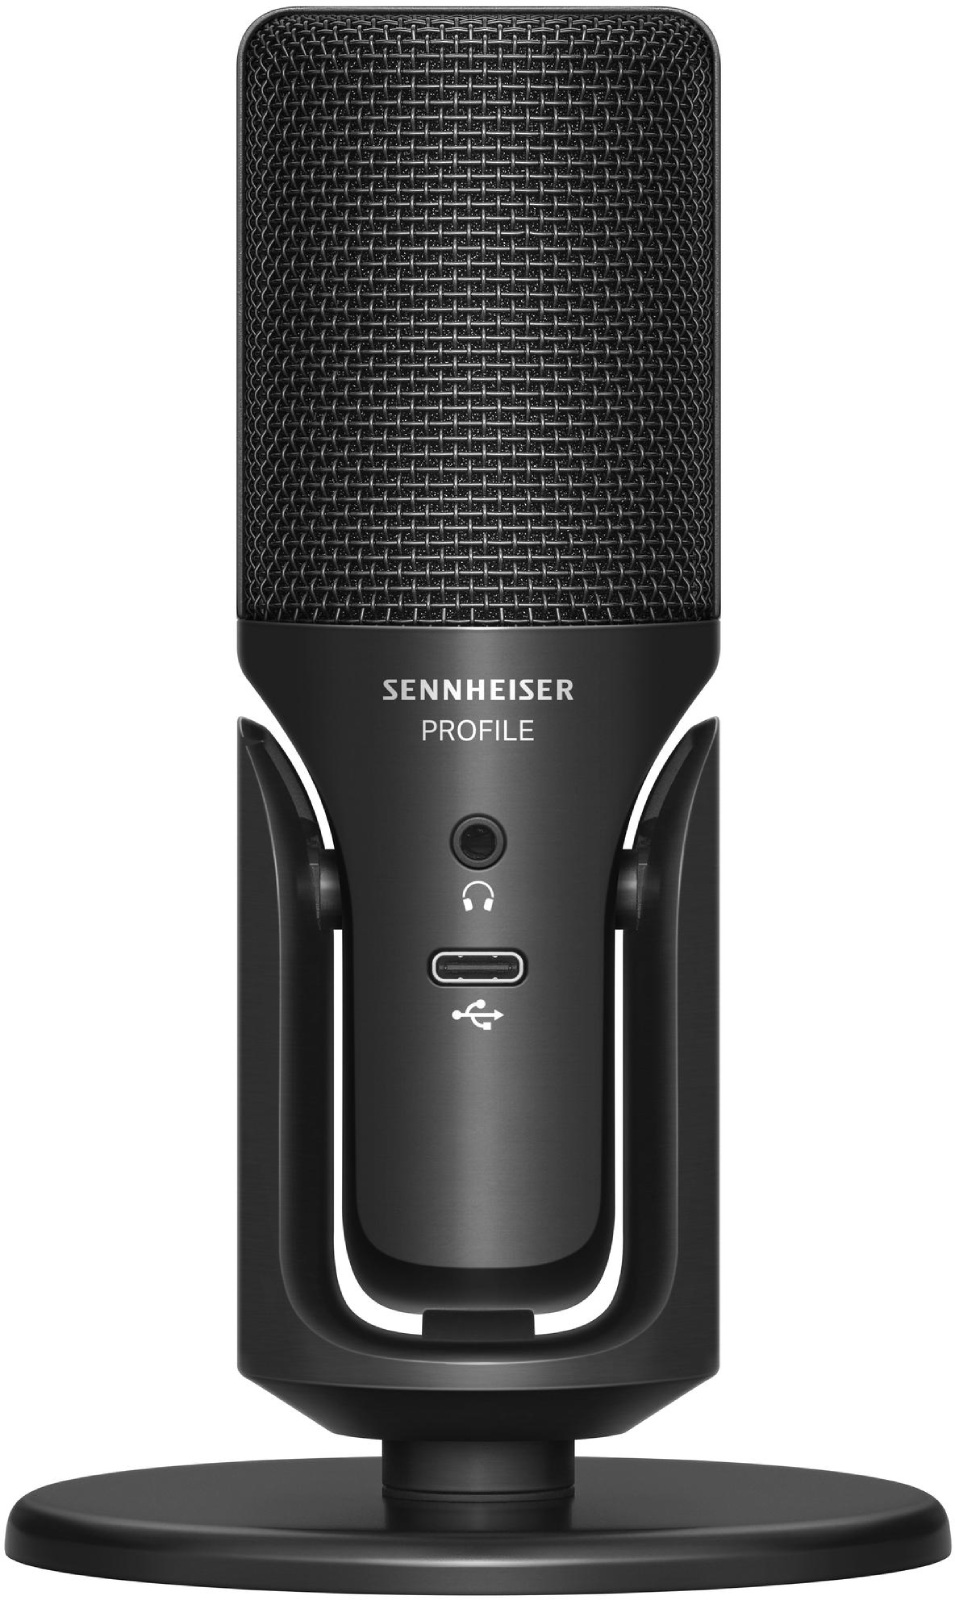 SENNHEISER PROFILE USB en stock - 150,00€ (Micros de studio